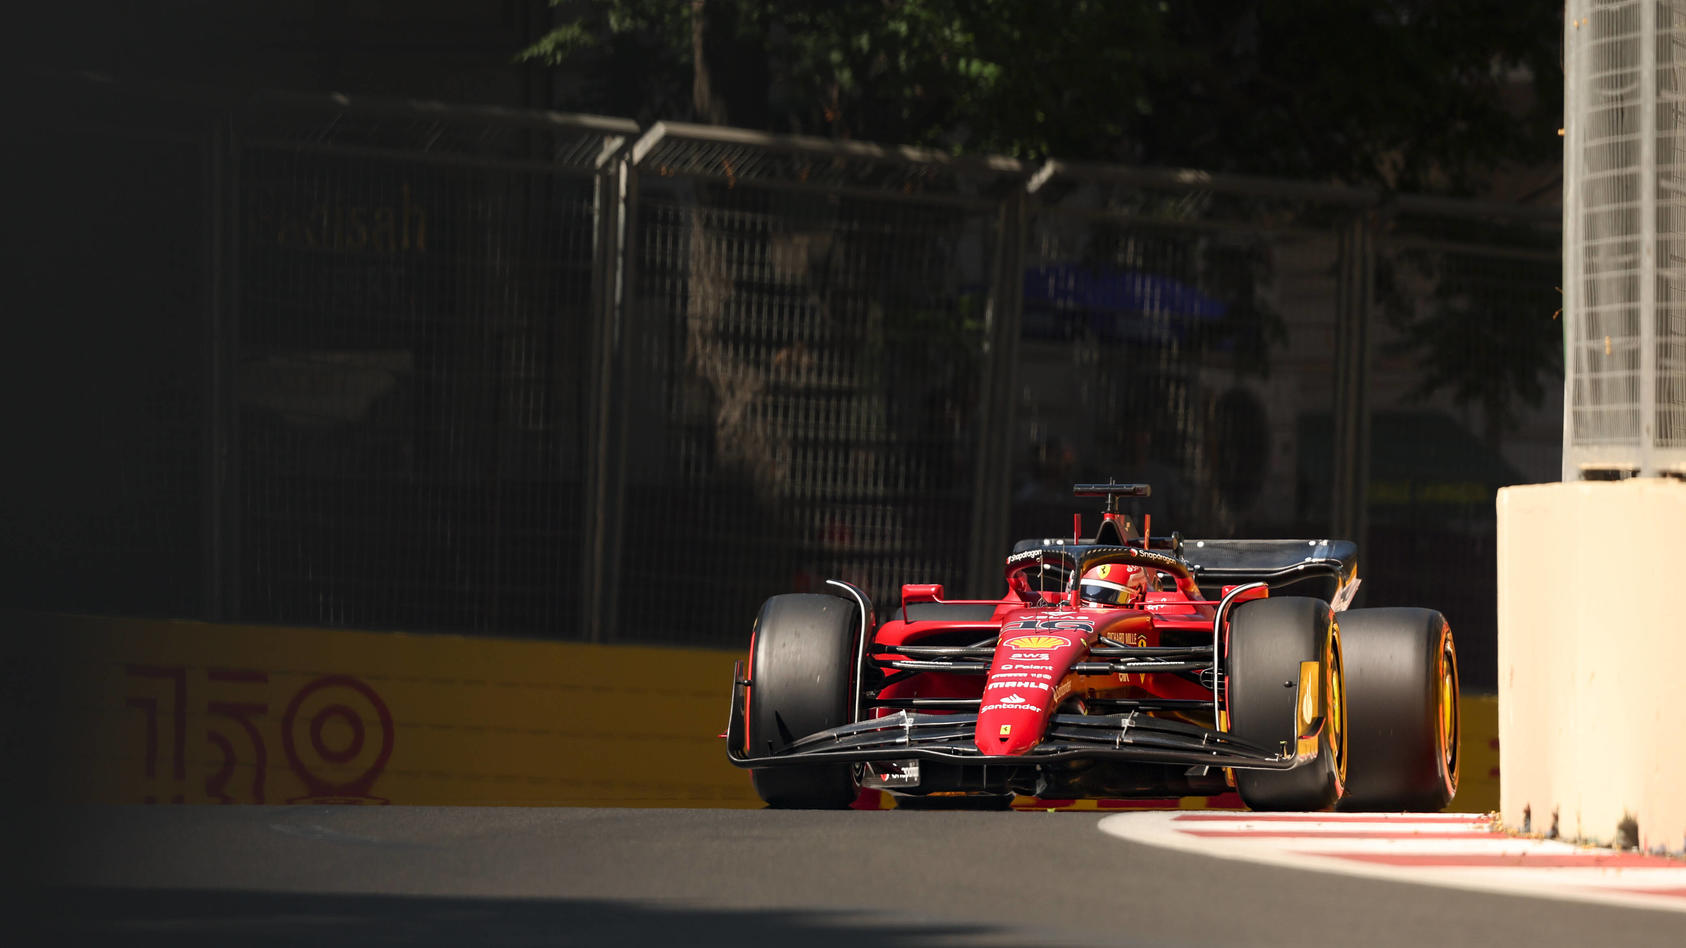 Formel 1 in Baku Charles Leclerc lässt Red Bull im Qualifying stehen und rast auf Pole